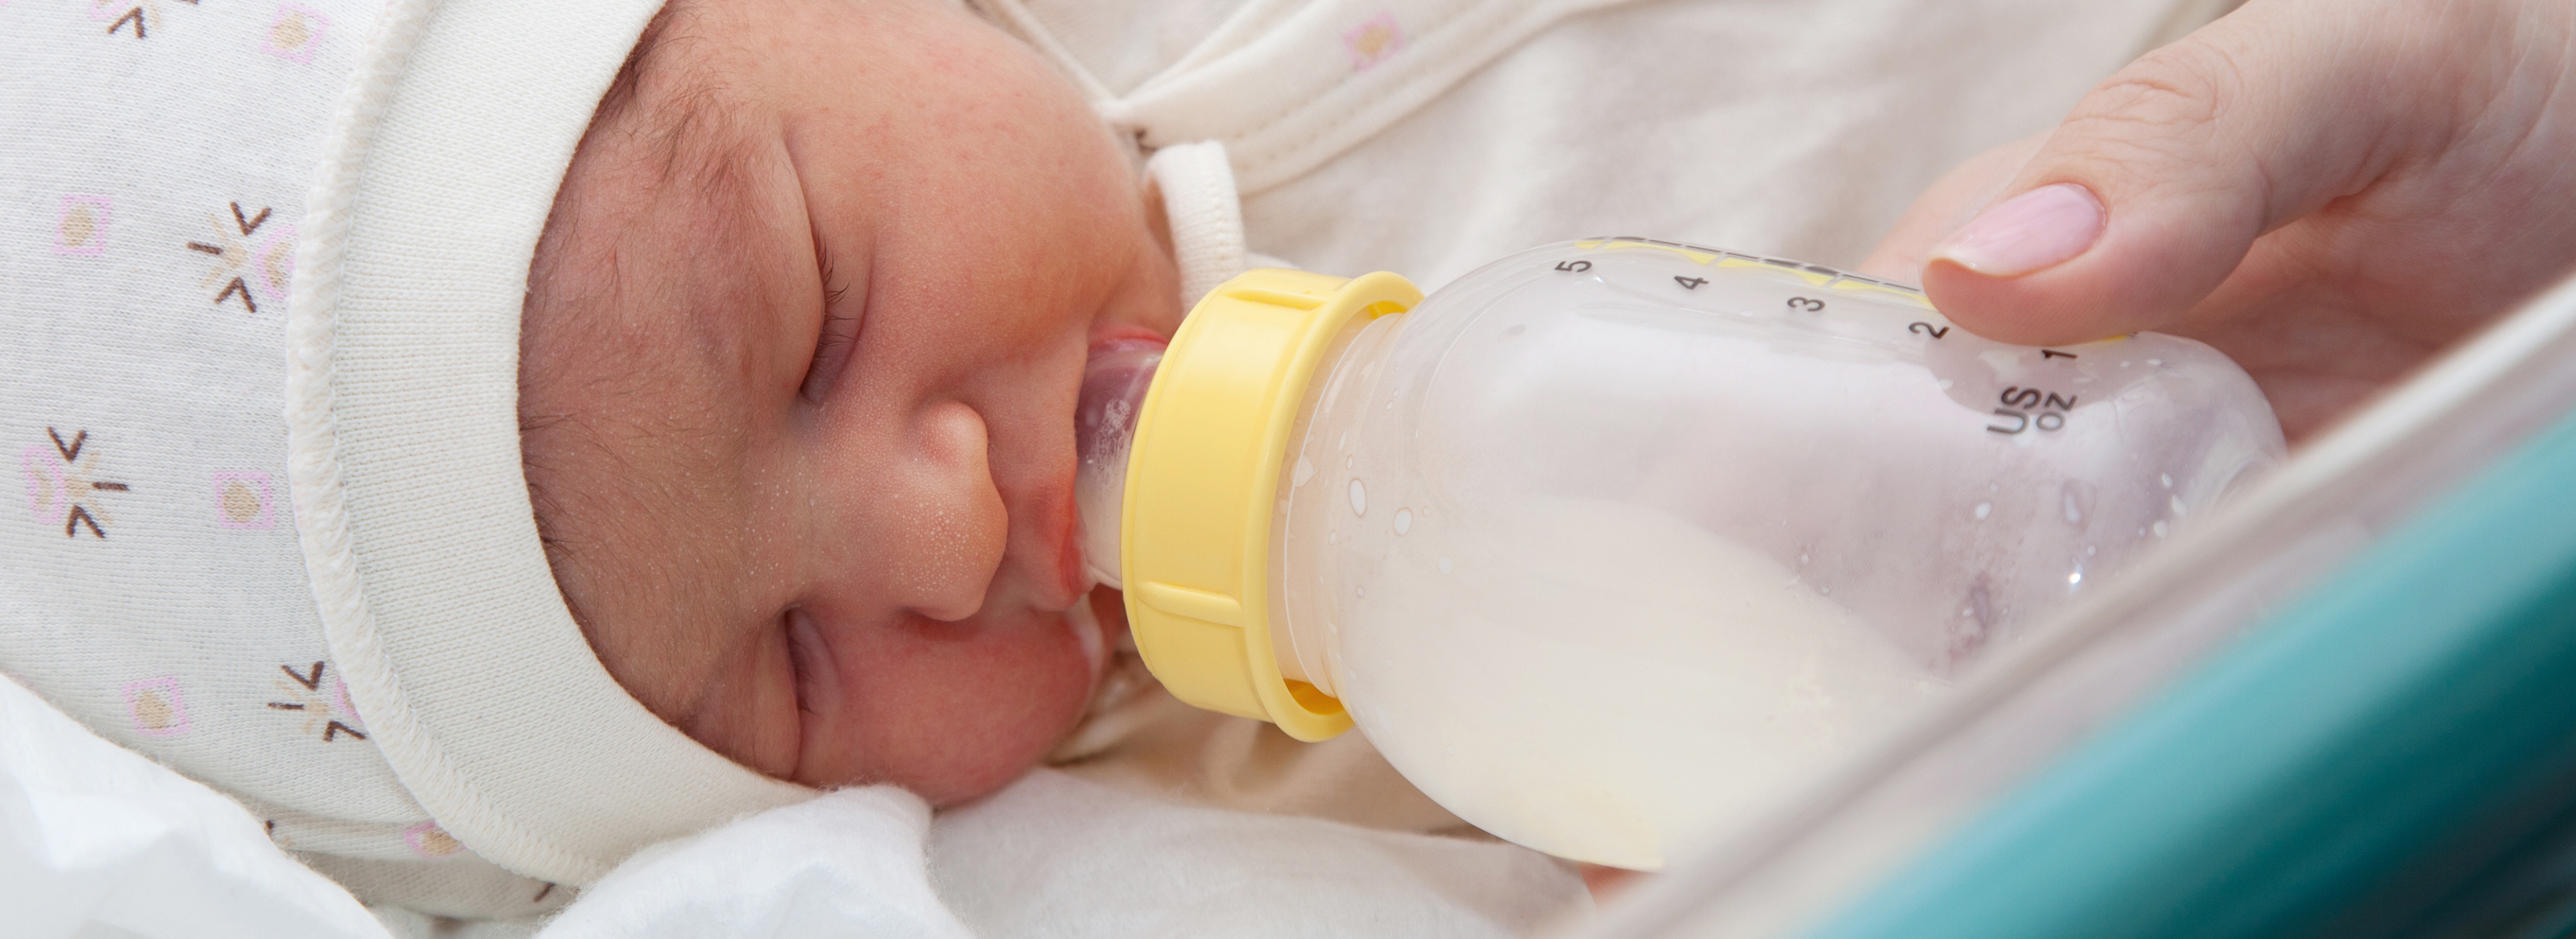 Hero Baby on X: En #HeroBaby hemos desarrollado fórmulas infantiles  considerando la composición de la leche materna y sus beneficios sobre la  salud, nuestra fuente de inspiración 🤱 ¿Quieres saber más sobre